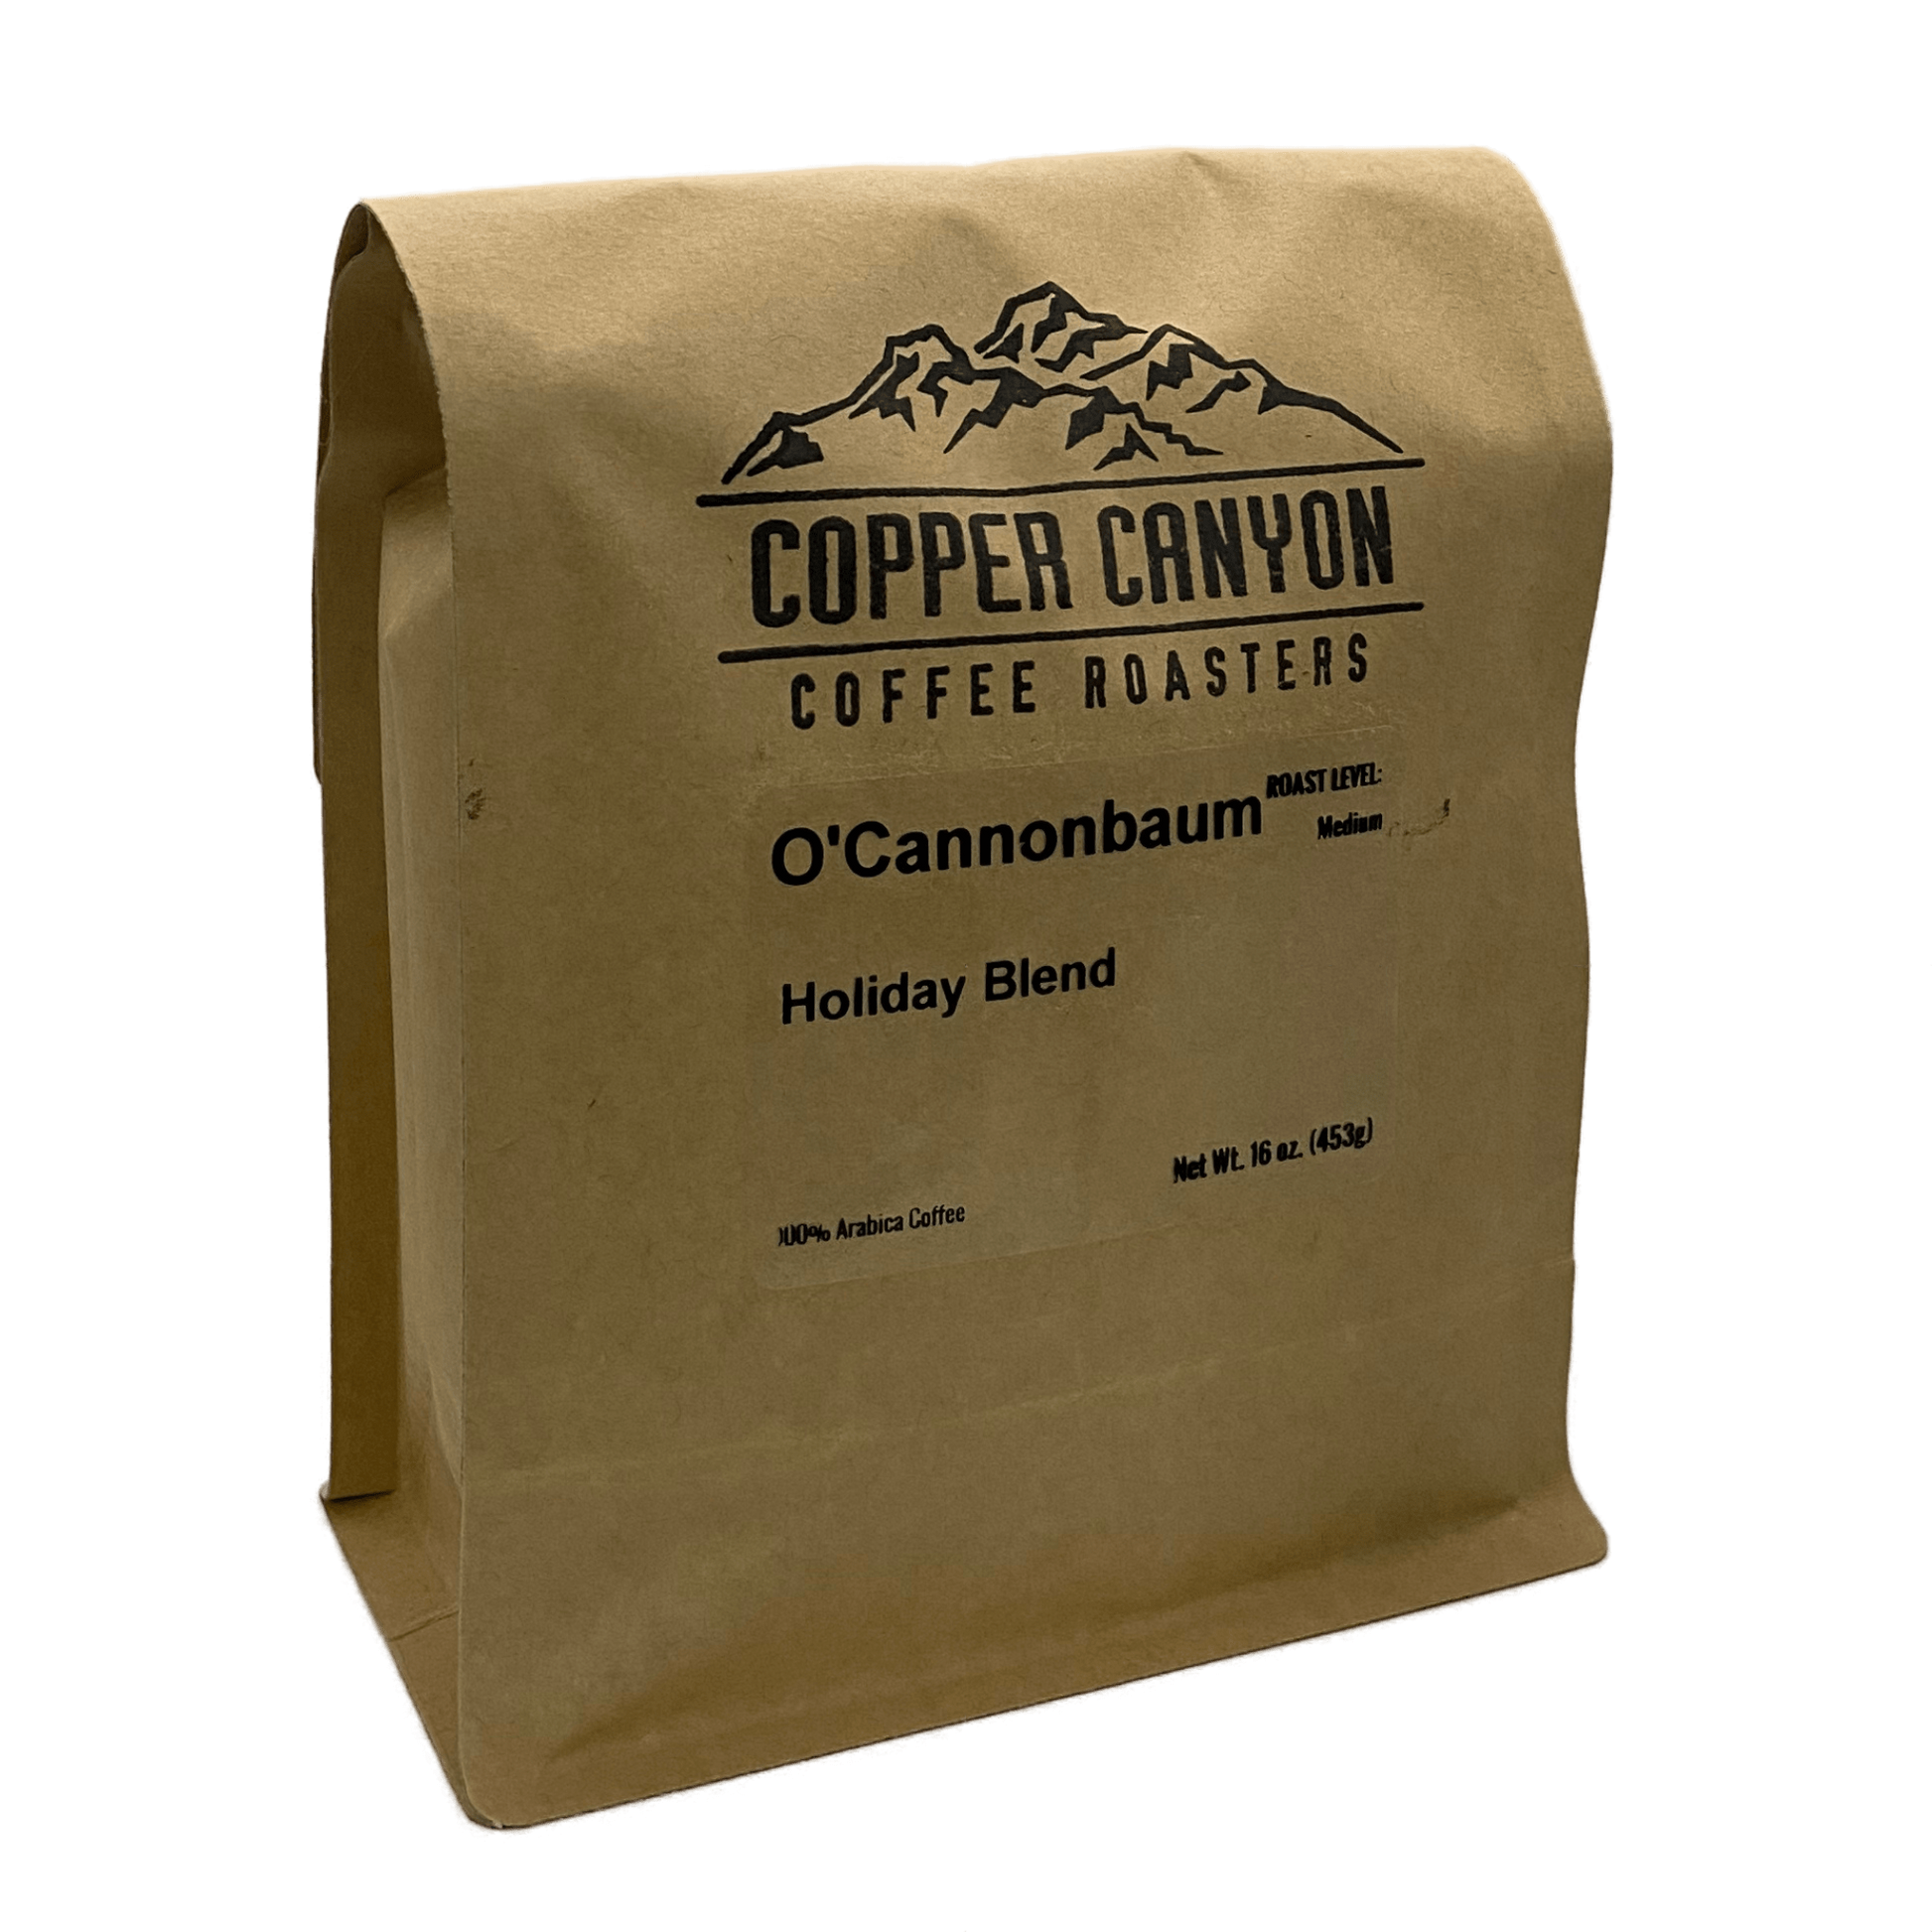 16 oz bag of O'CannonBaum Holiday Blend, dark roast coffee